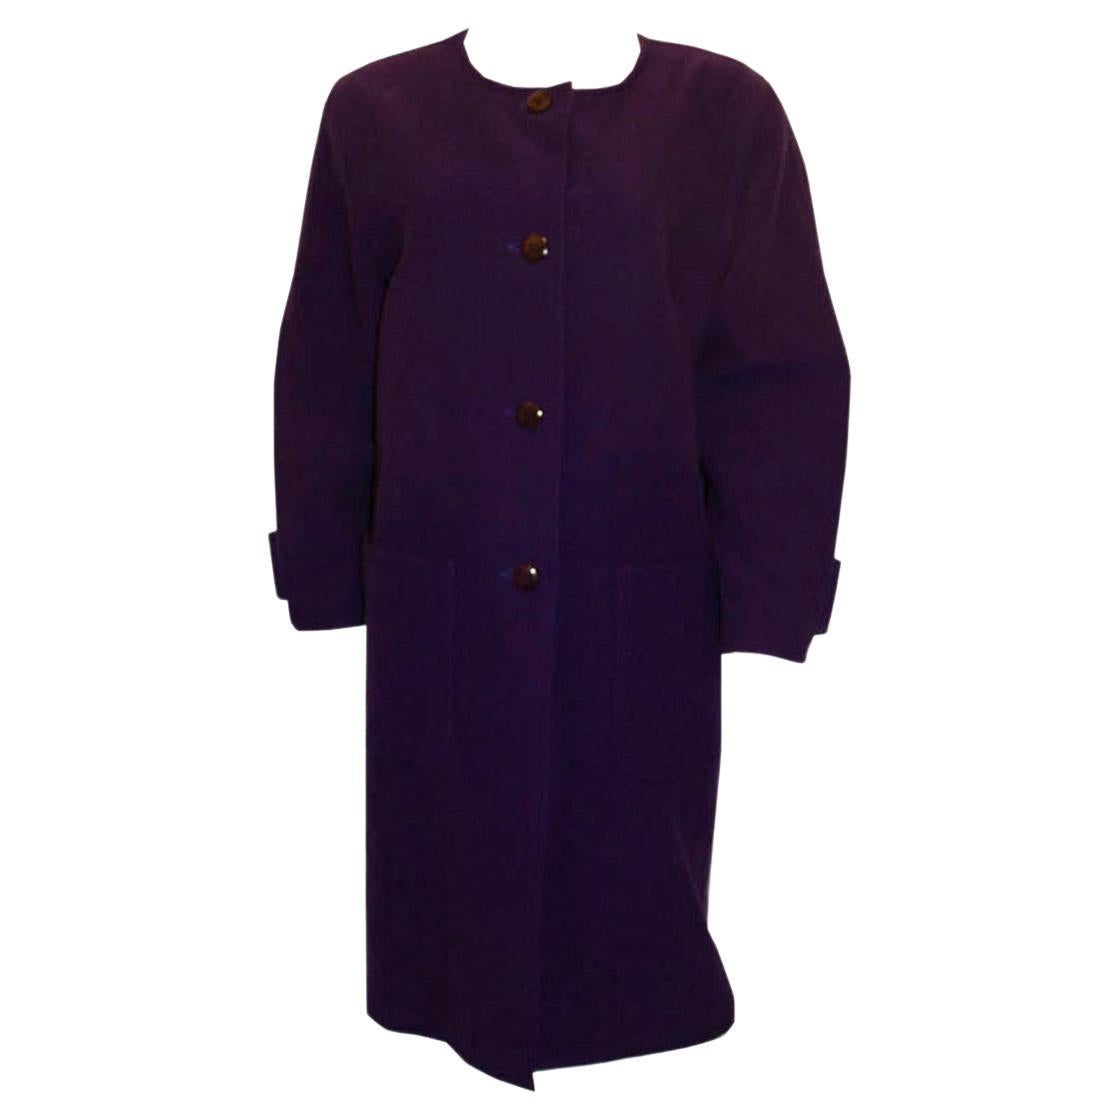 A statement vintage purple coat by Courreges For Sale